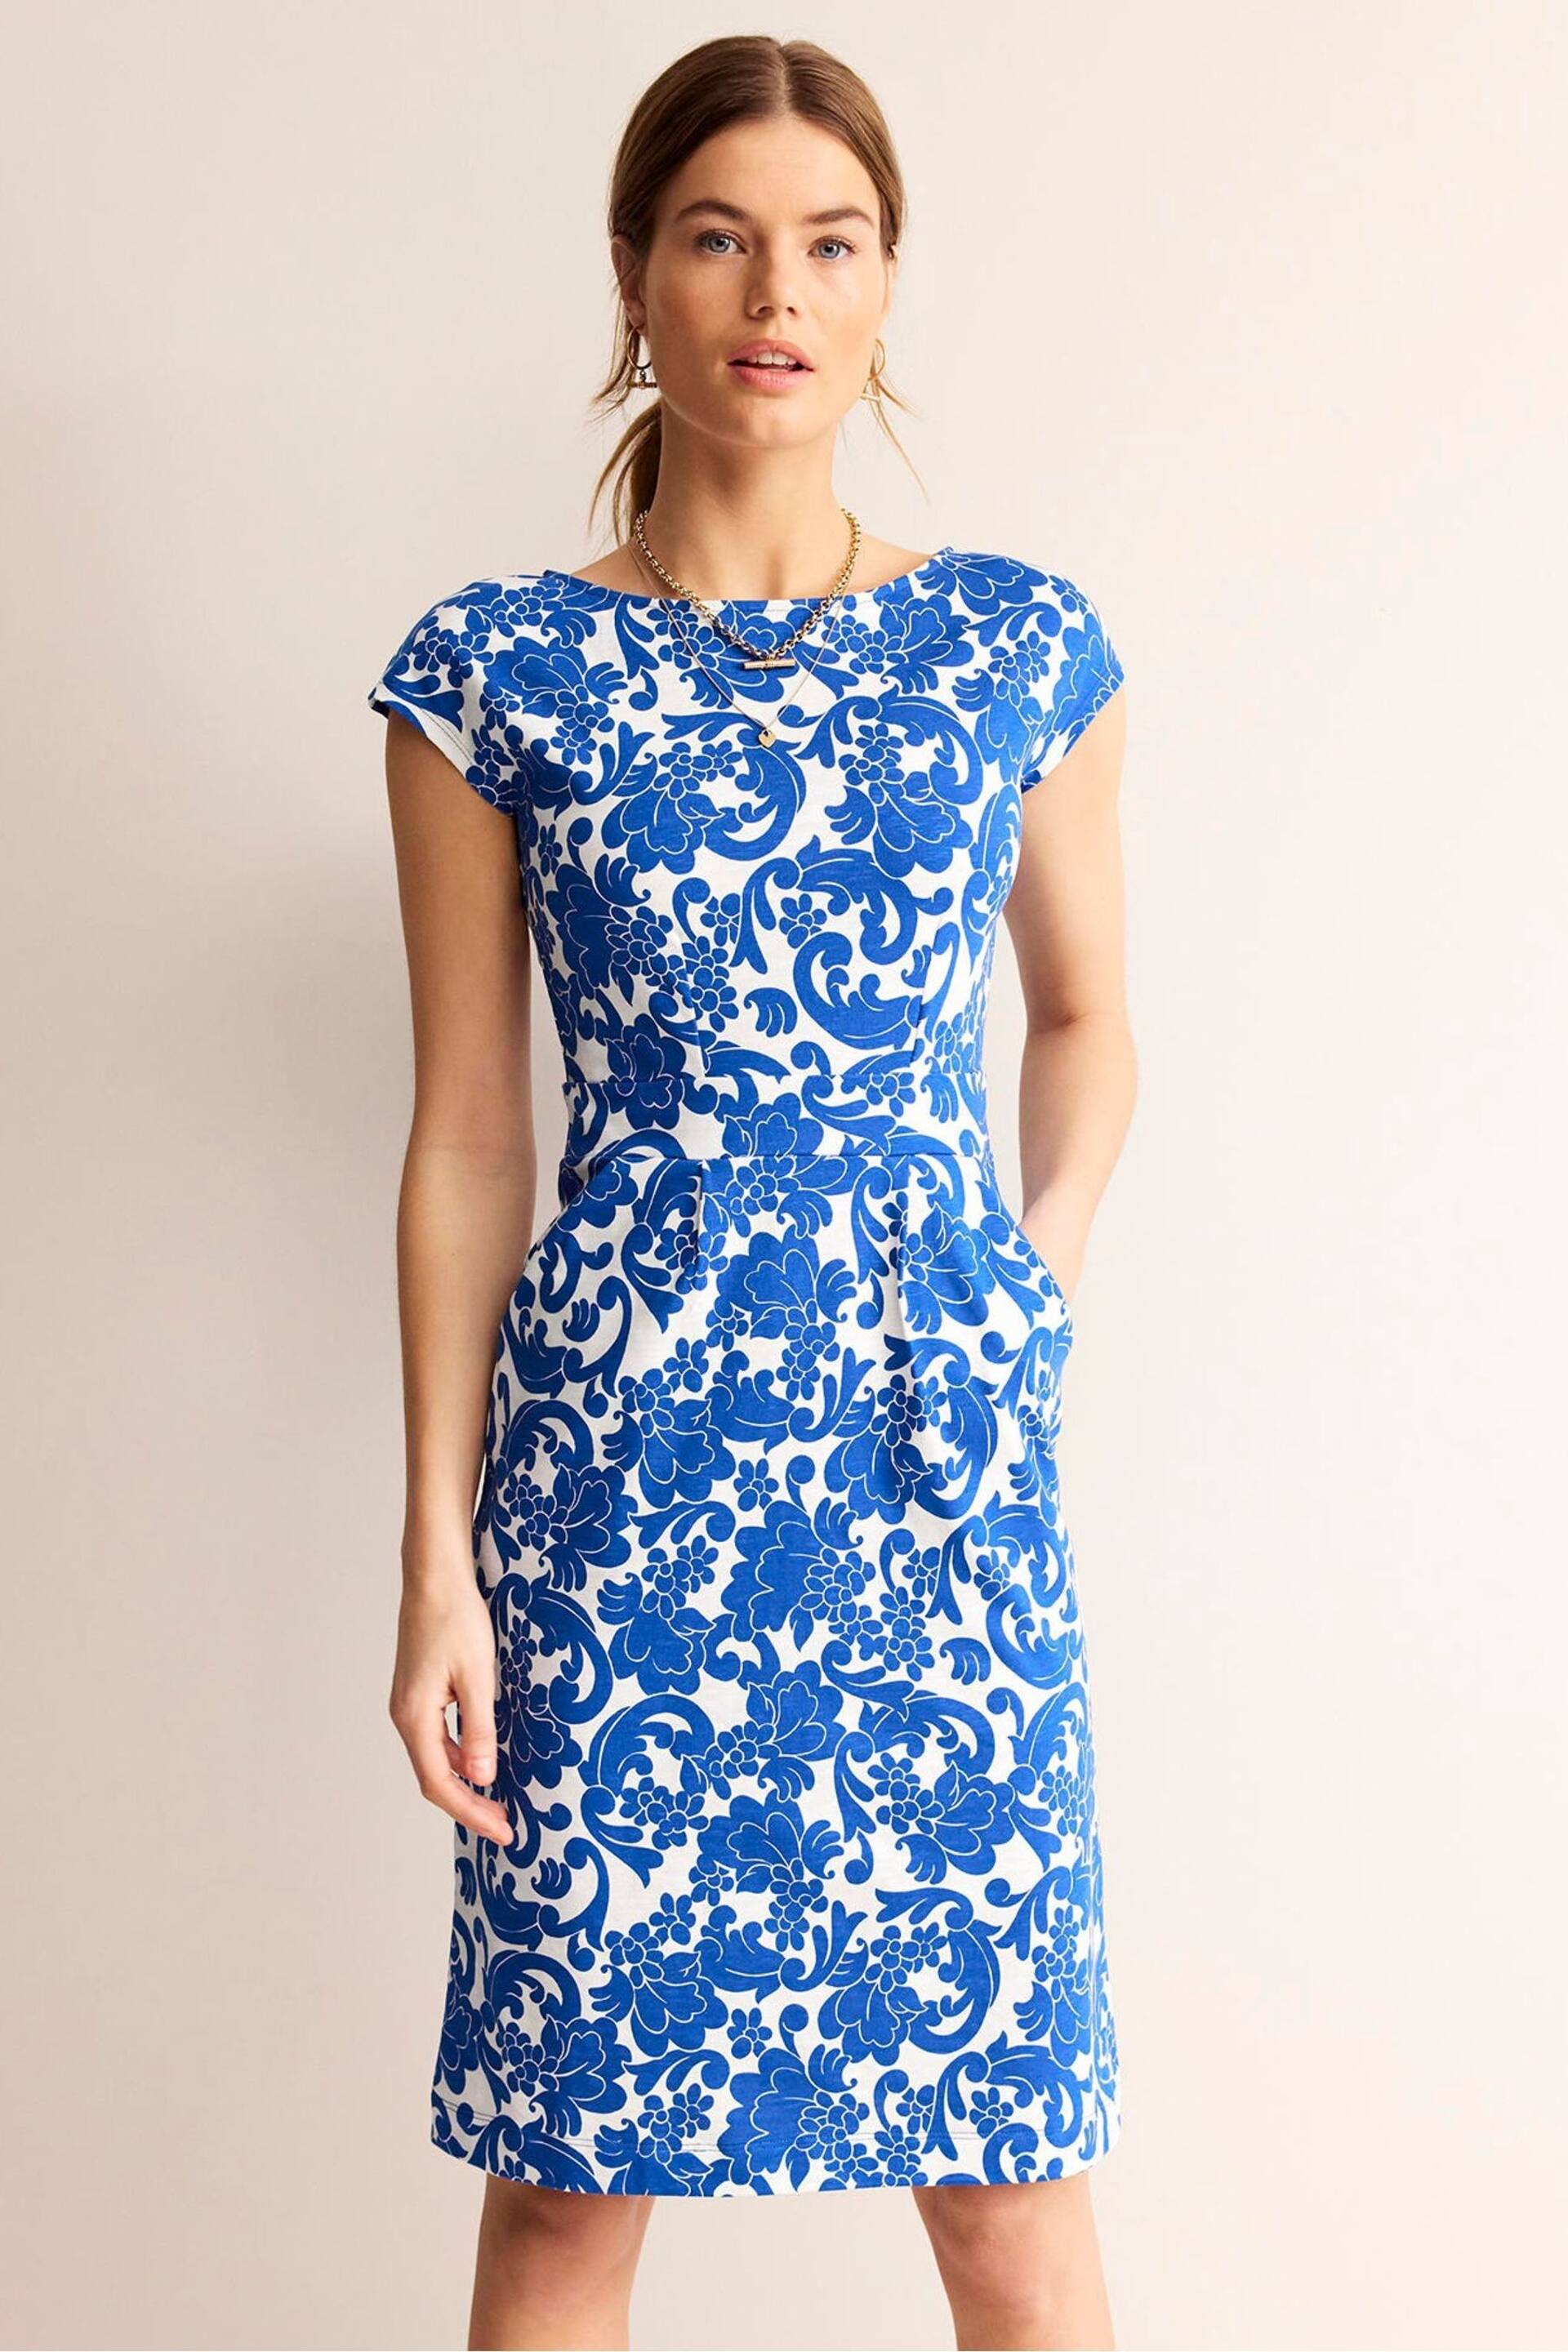 Boden Blue Floral Florrie Jersey Dress - Image 1 of 5